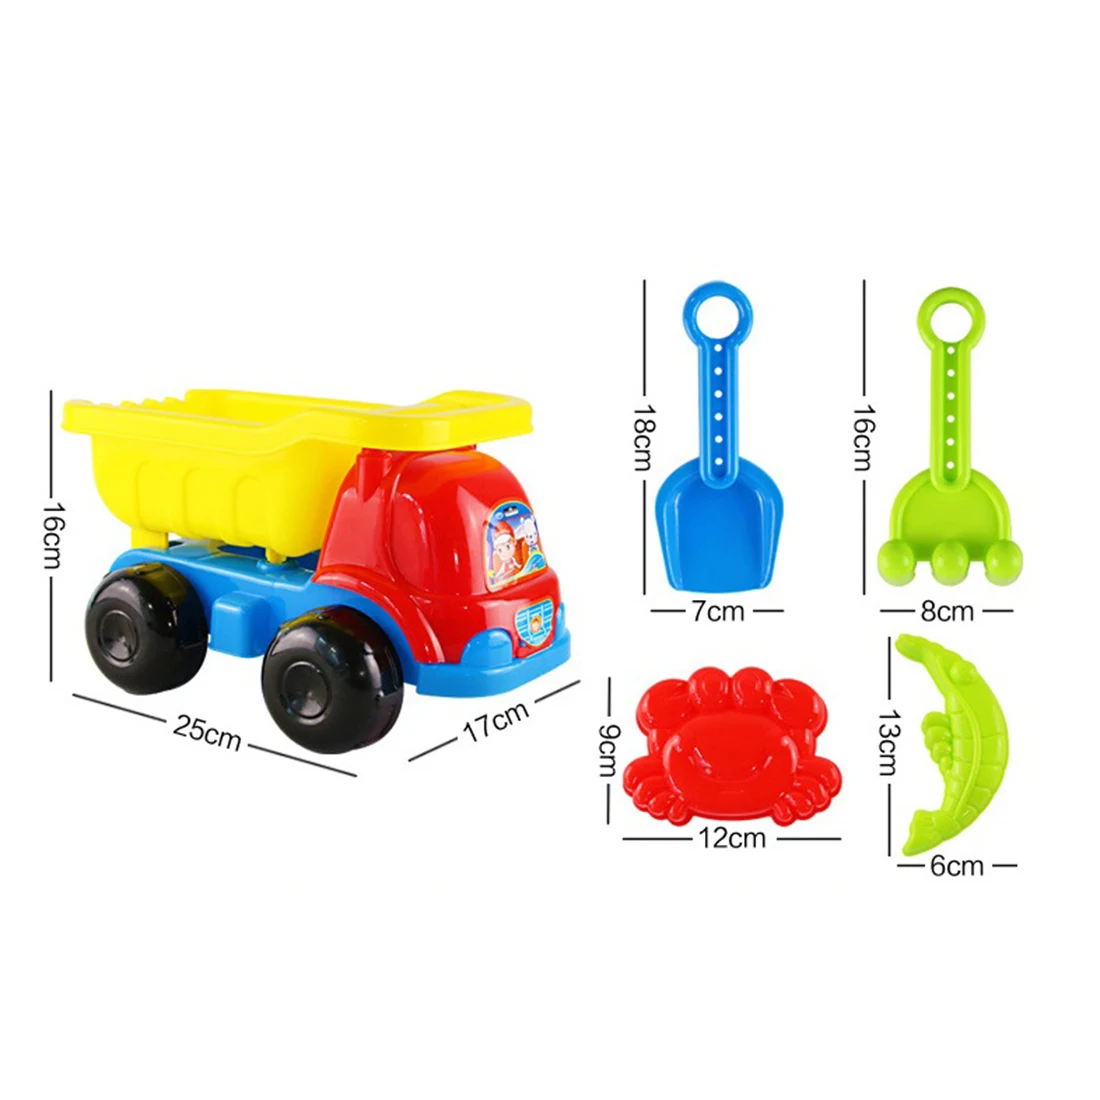 5 шт пляжные игрушки песок игровой набор развивающая игрушка с пляжные багги для детей летние развлекательная игрушка набор